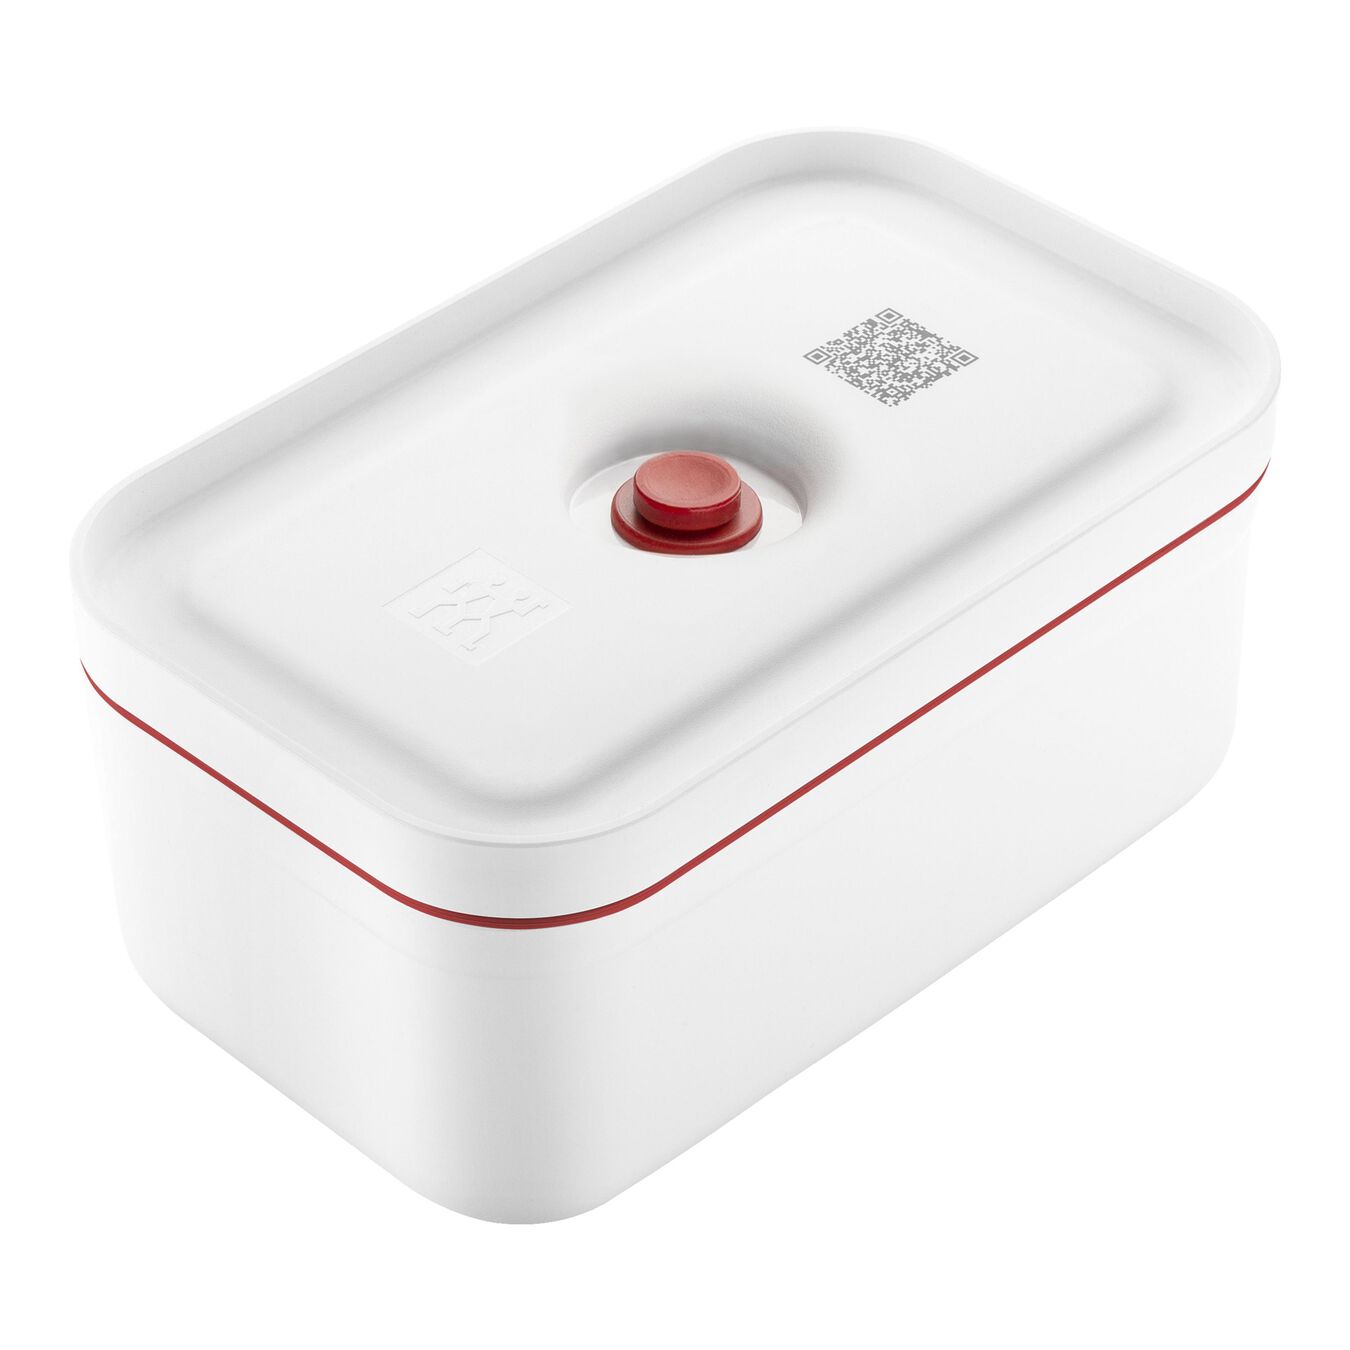 Lunch box sottovuoto M, plastica, bianco-rosso,,large 1